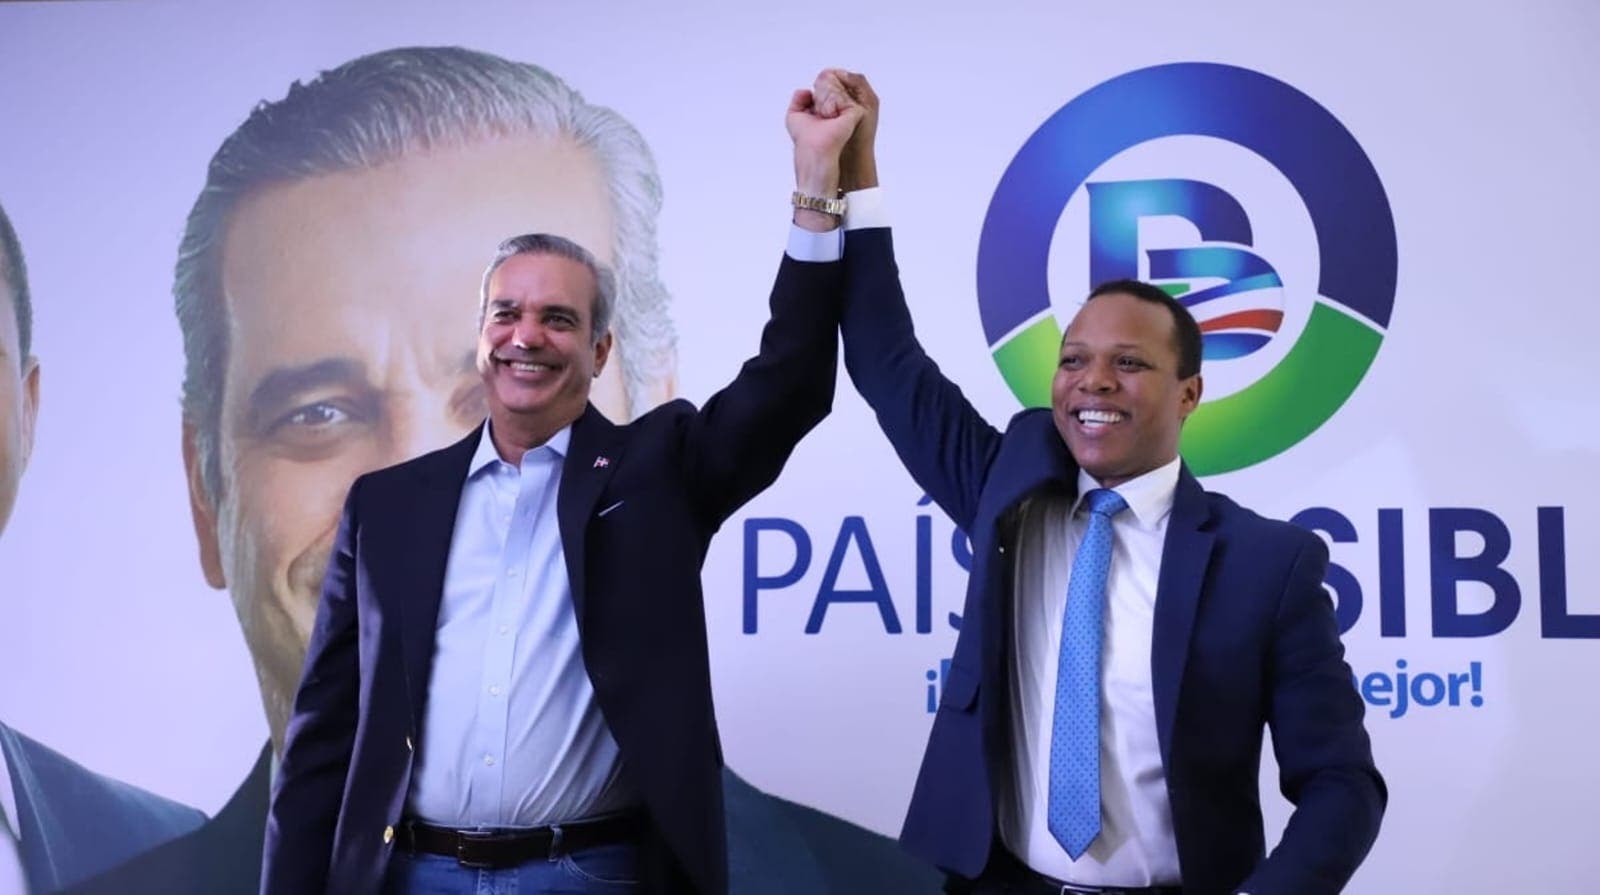 País Posible fue el sexto partido más votado en elecciones municipales